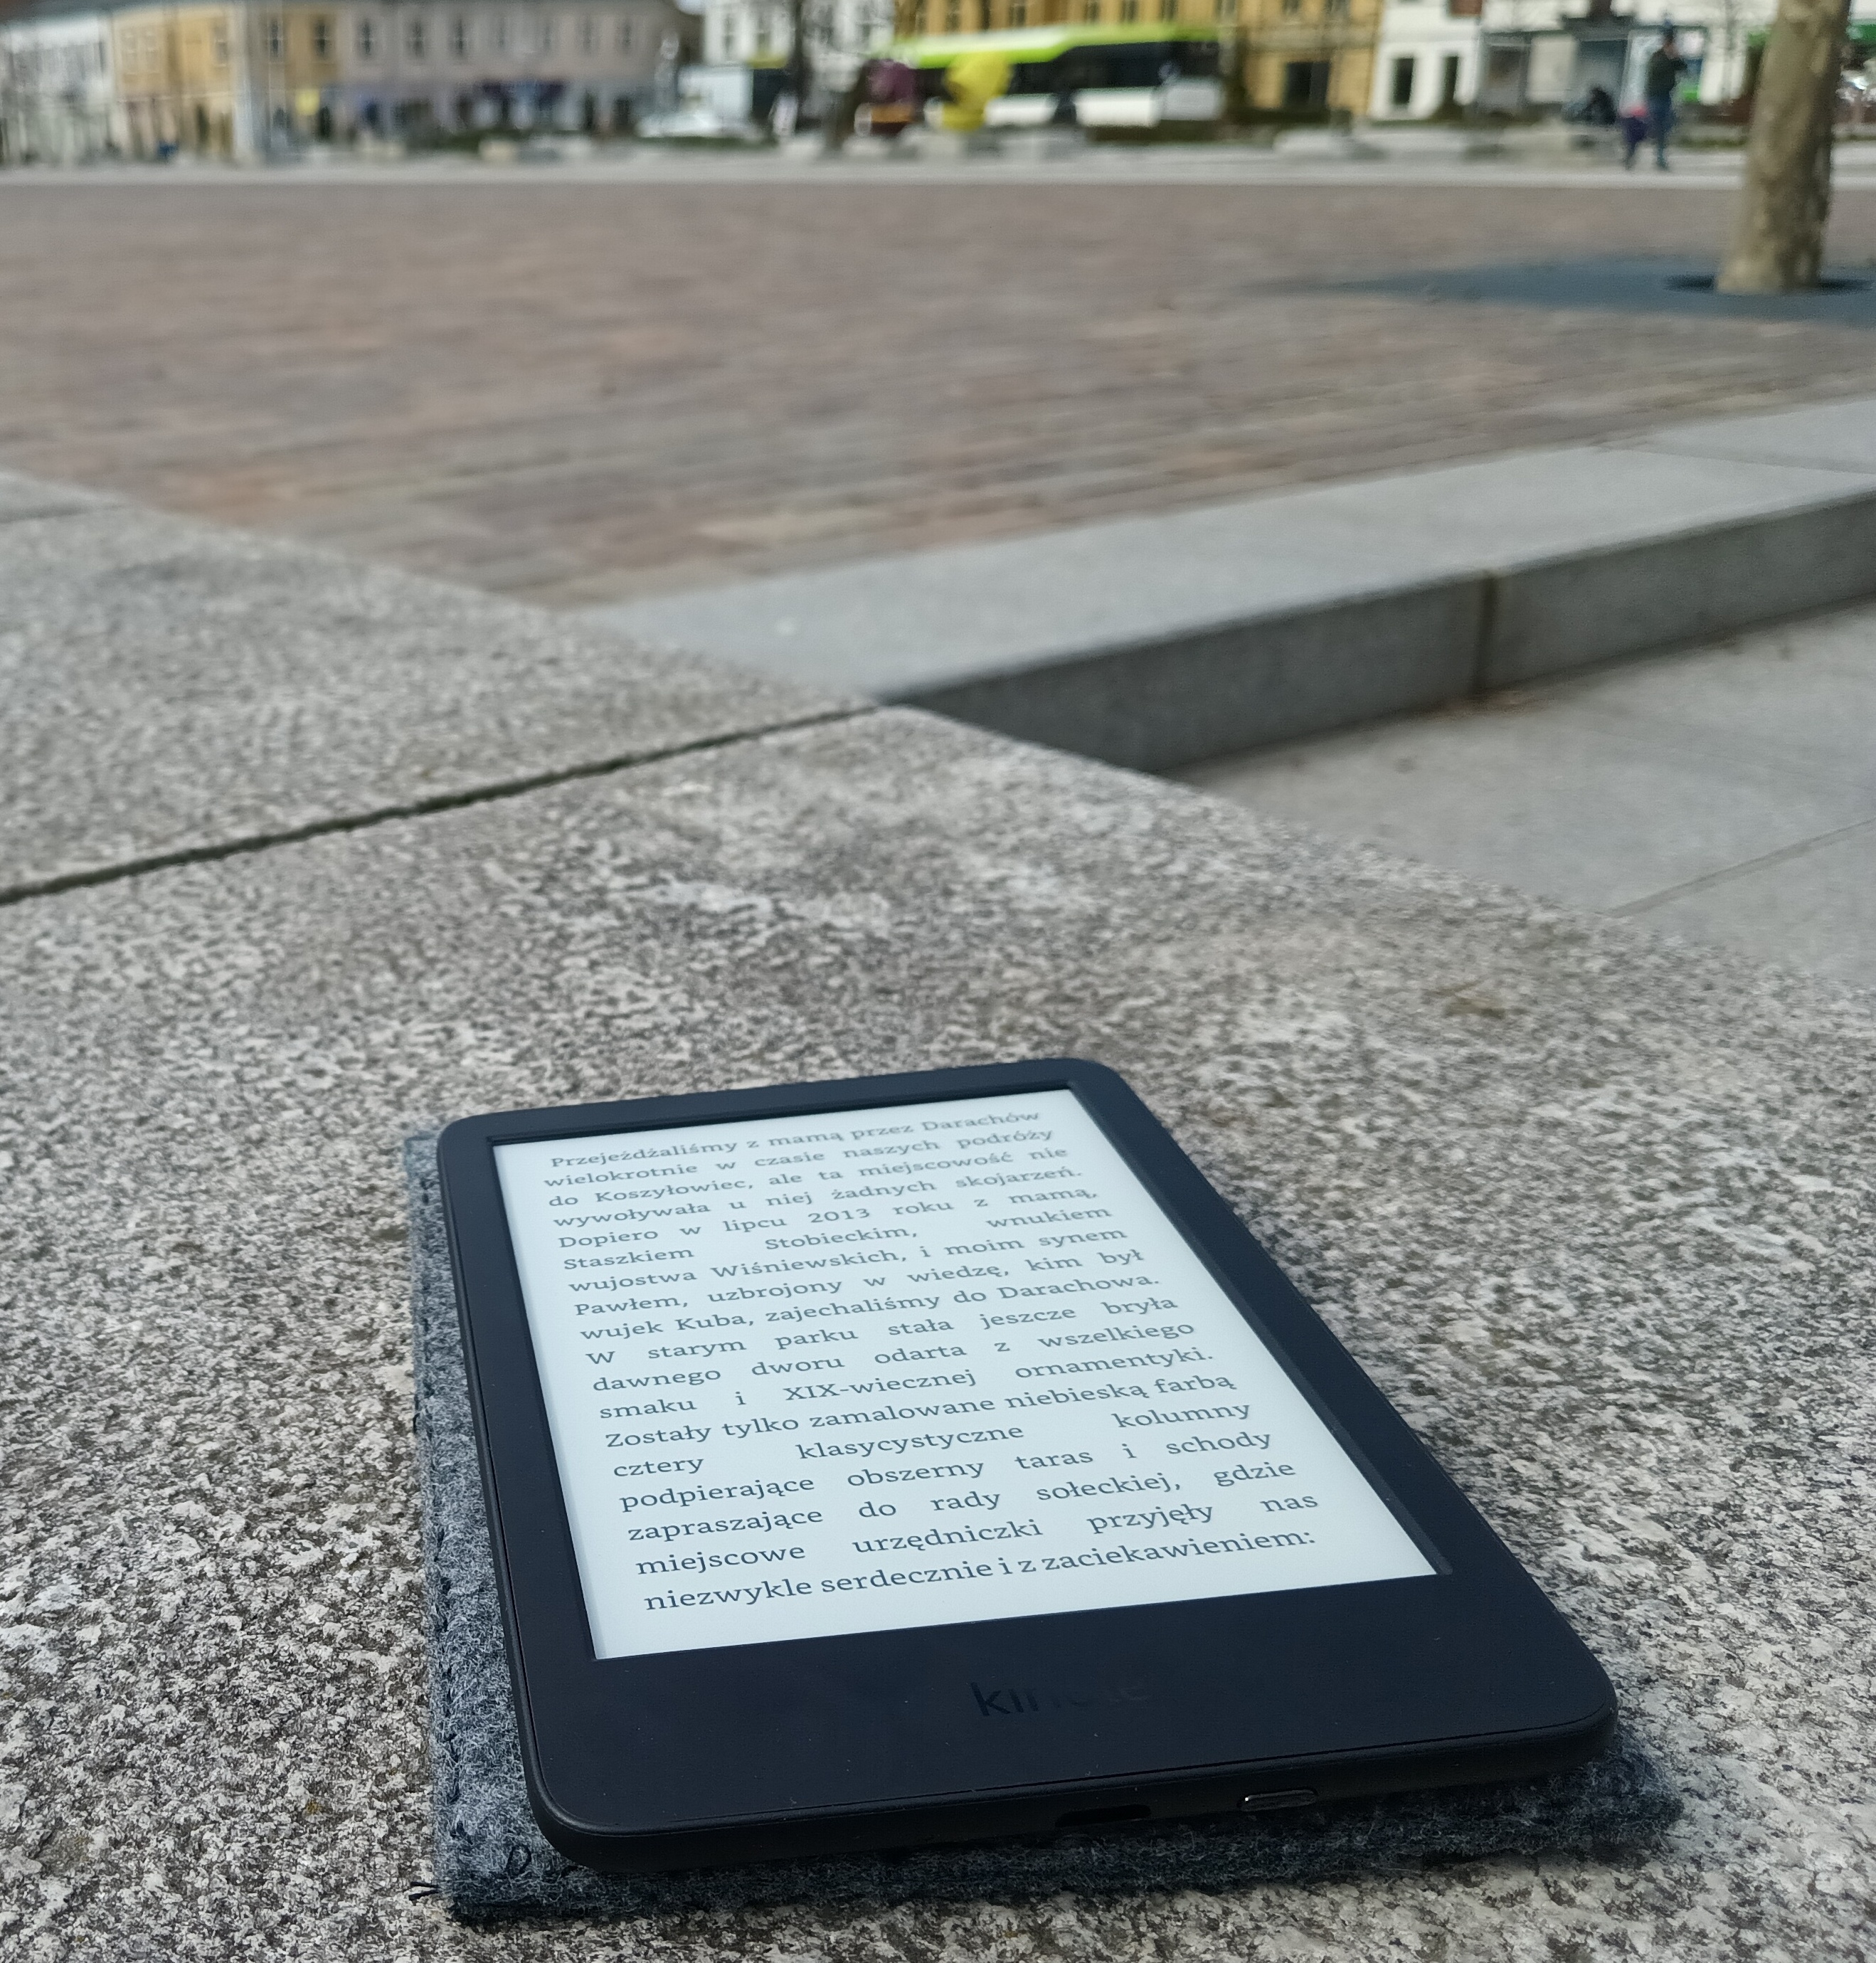 File:Amazon Kindle Paperwhite 5 Eleventh Generation (C2V2L3) 6-inch e-reader.jpg - Wikipedia